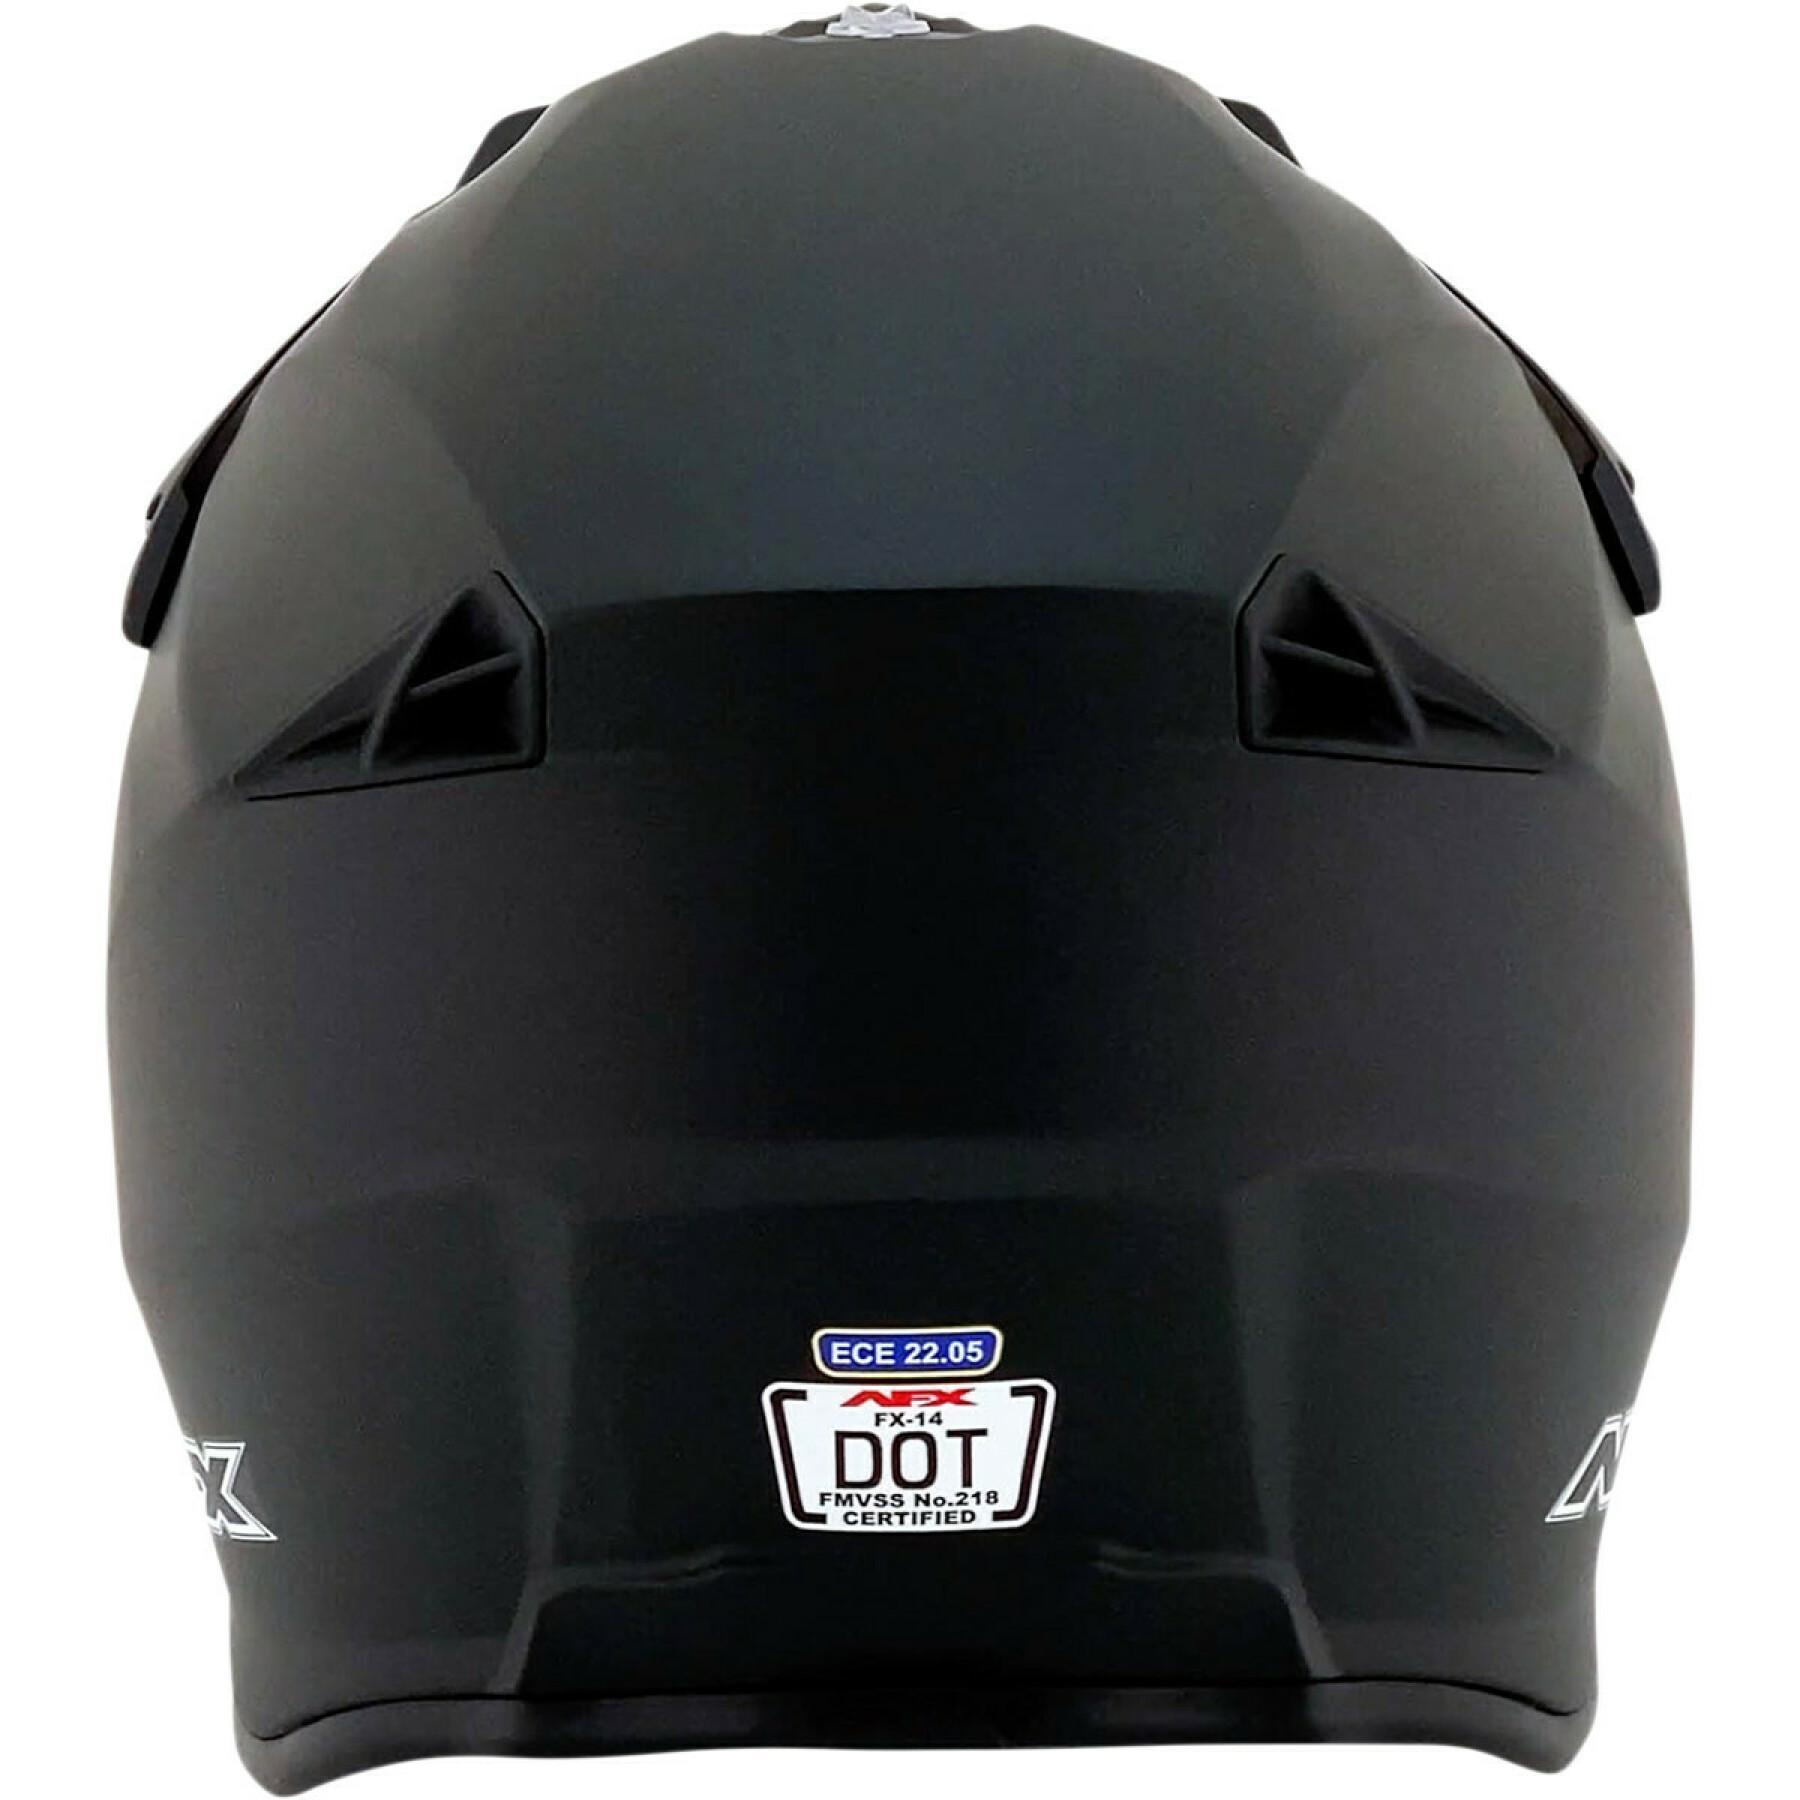 Motorcycle helmet AFX fx14